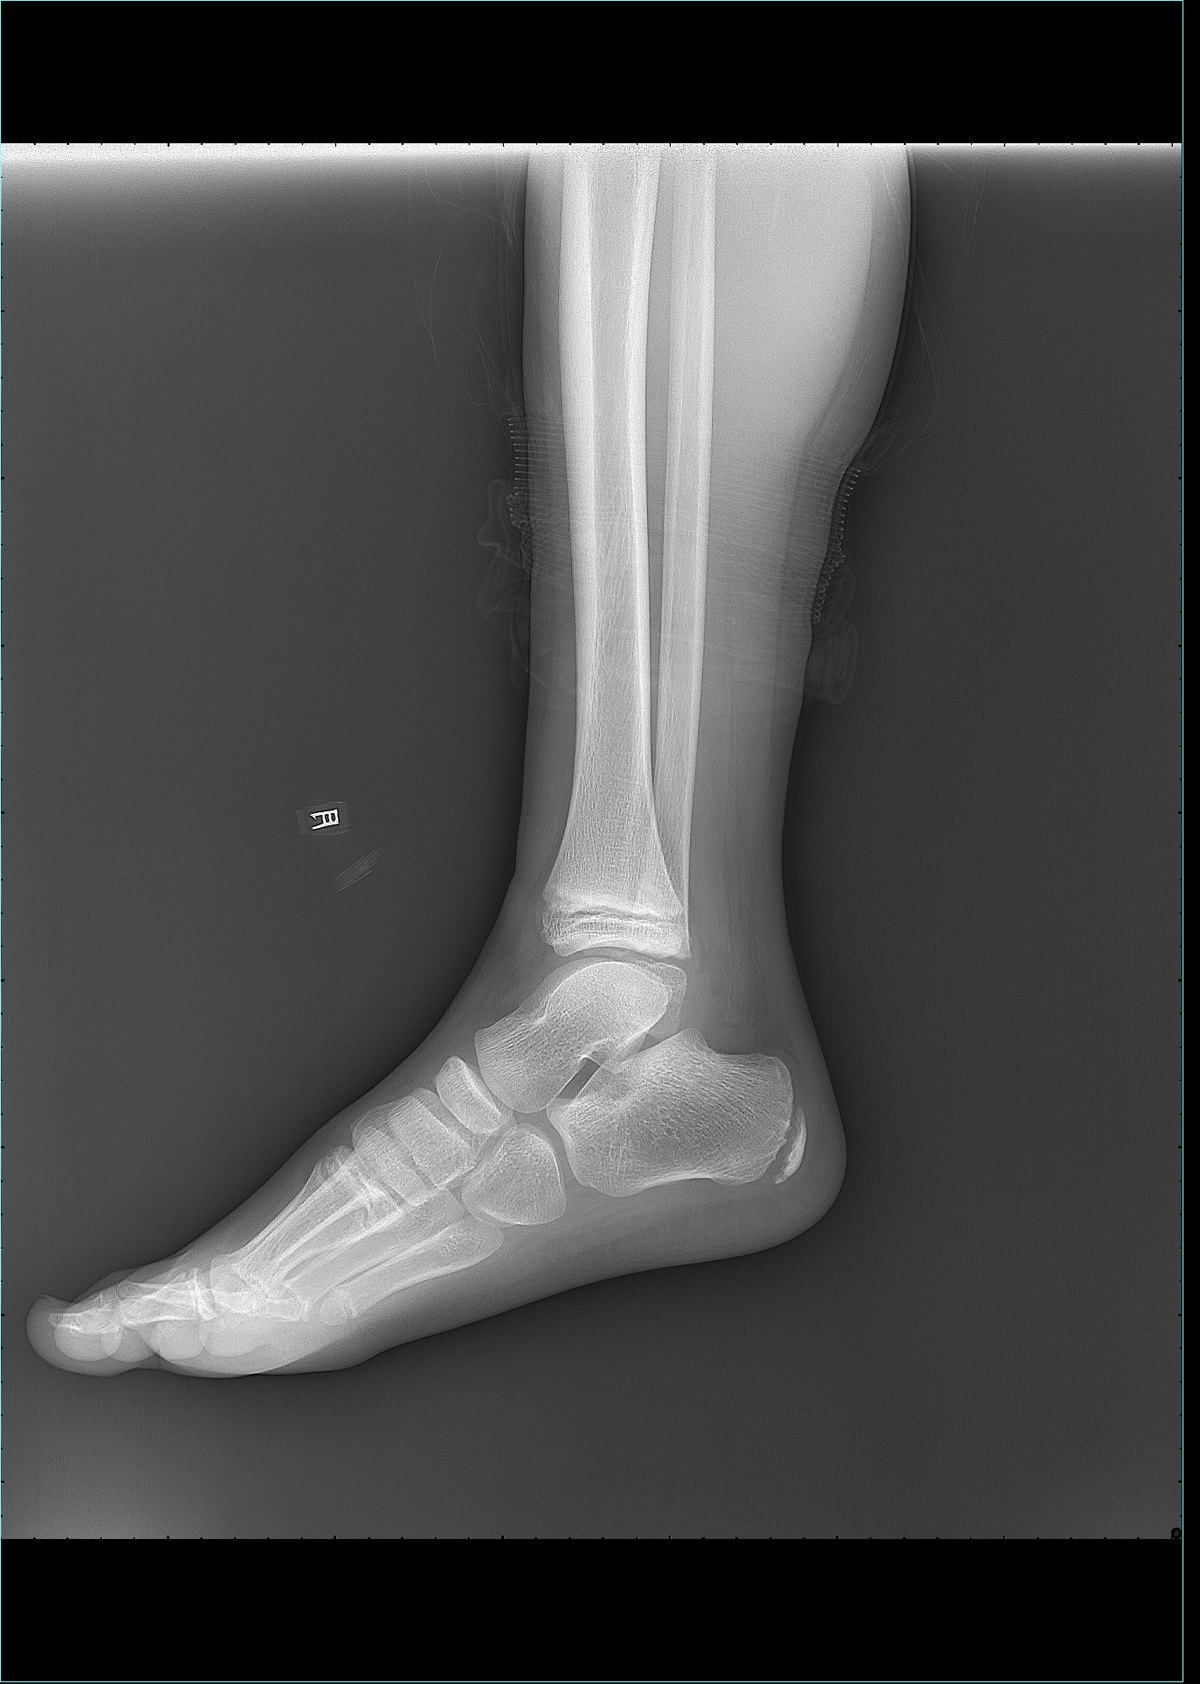 x13707:m-8,右侧踝关节外伤后疼痛半小时余 x线病例讨论 医影在线